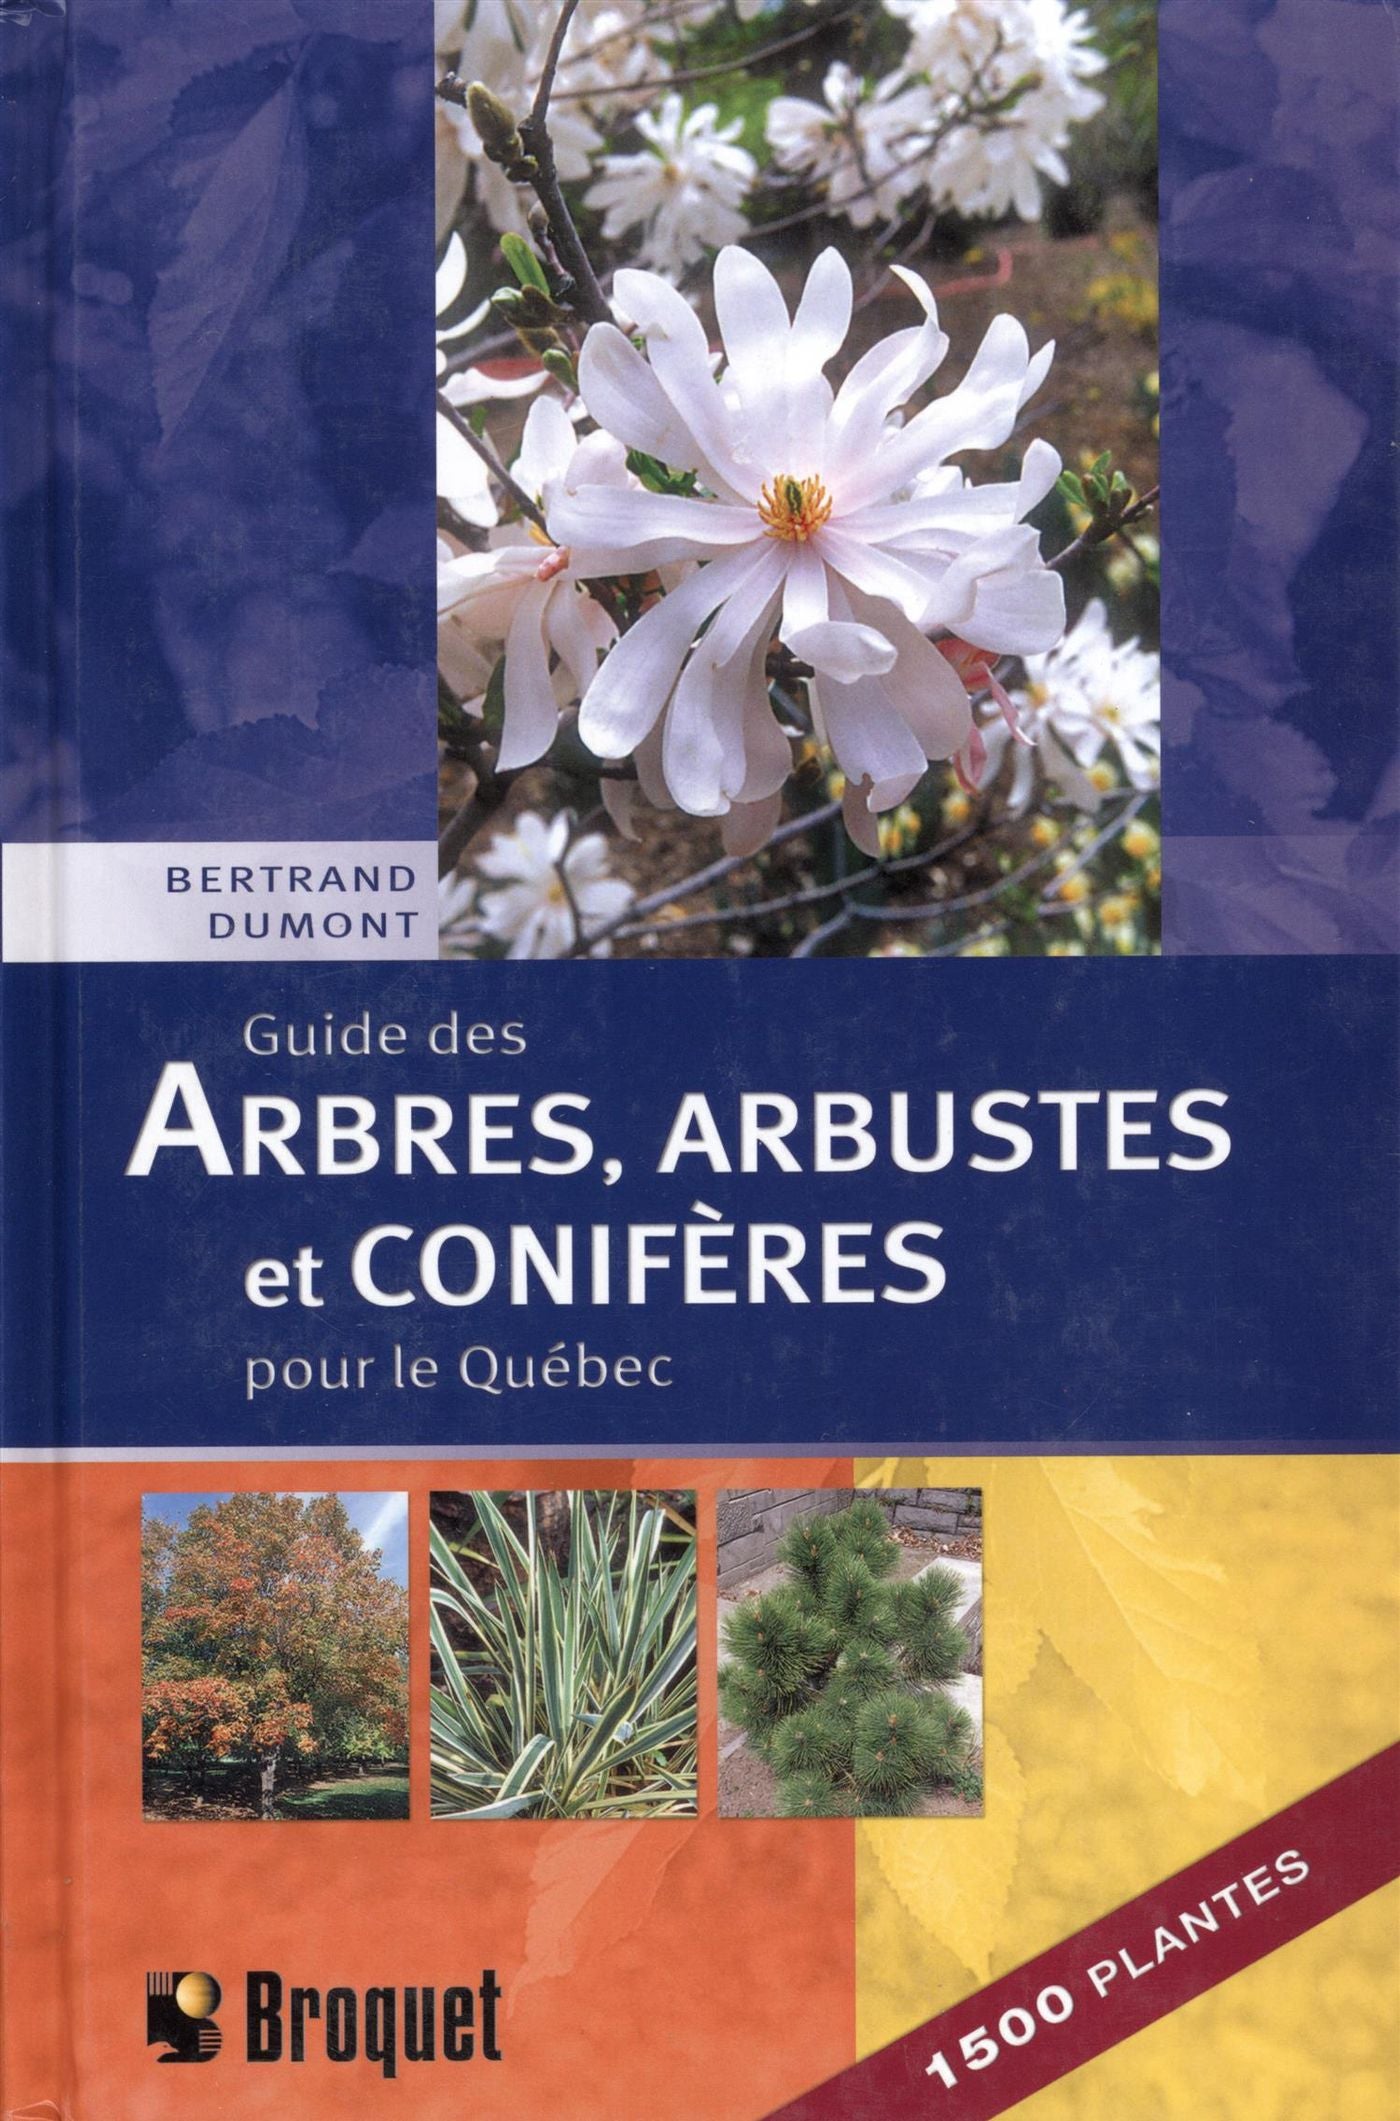 Guide des arbres, arbustes et conifères pour le Québec - Bertrand Dumont